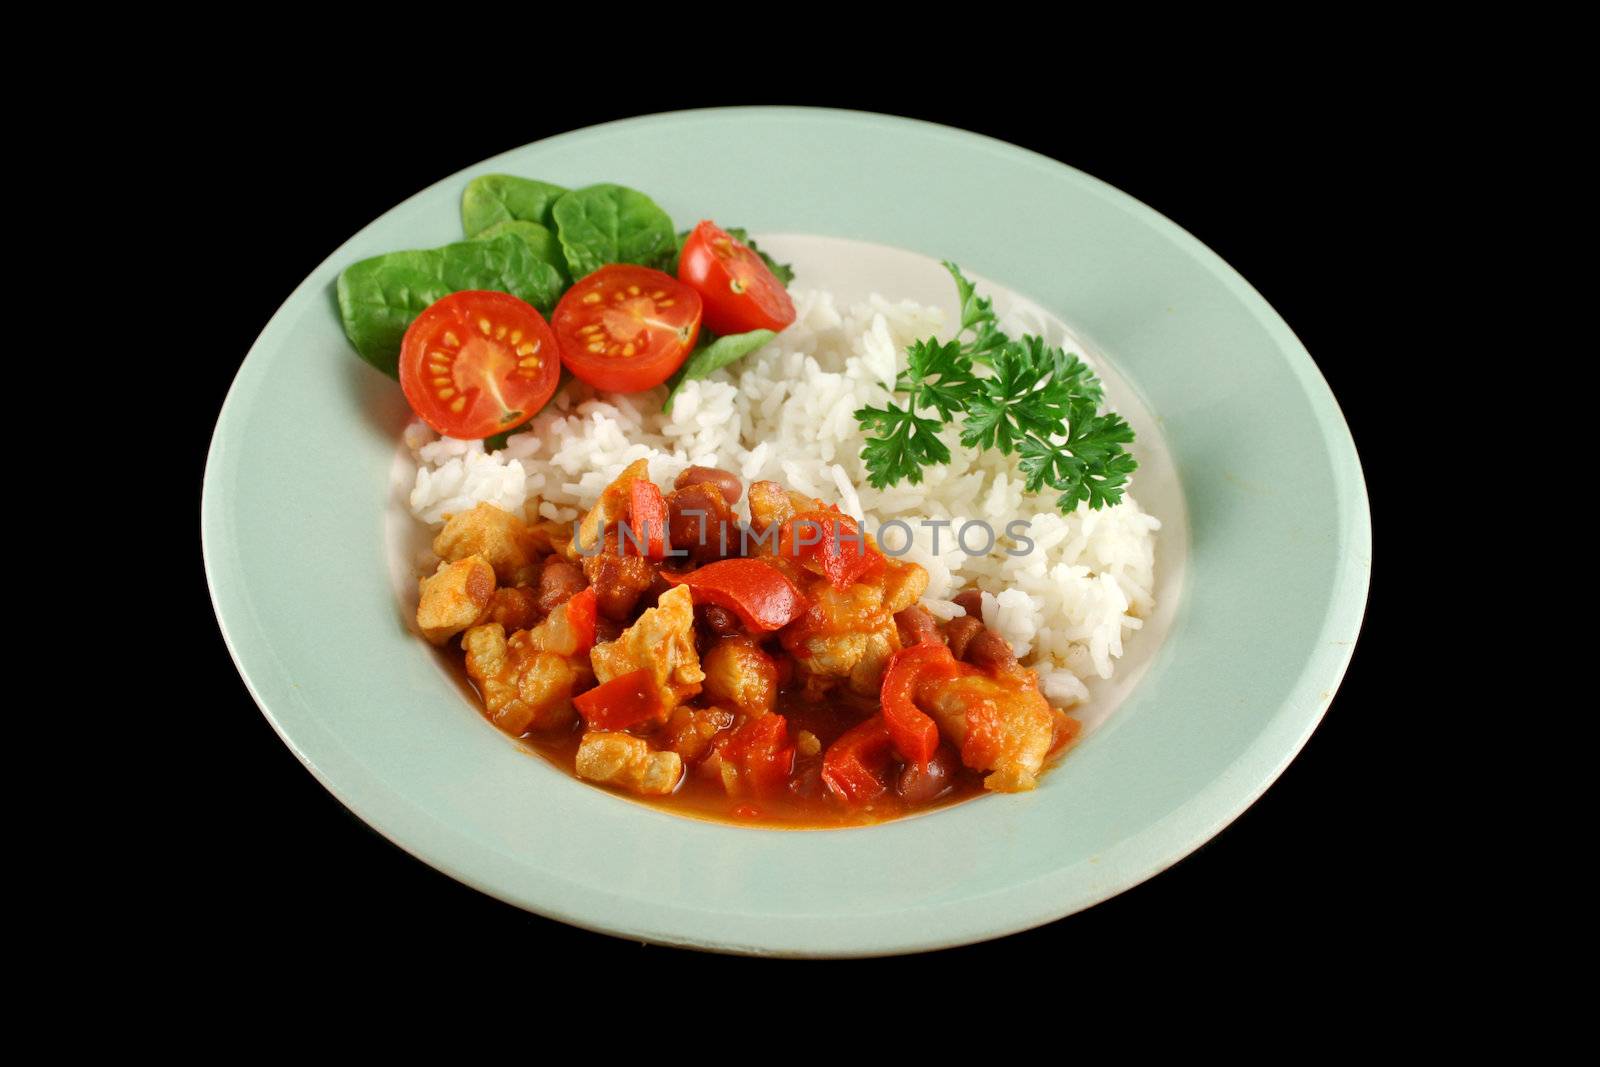 Chicken And Lentil Stew With Rice 2 by jabiru